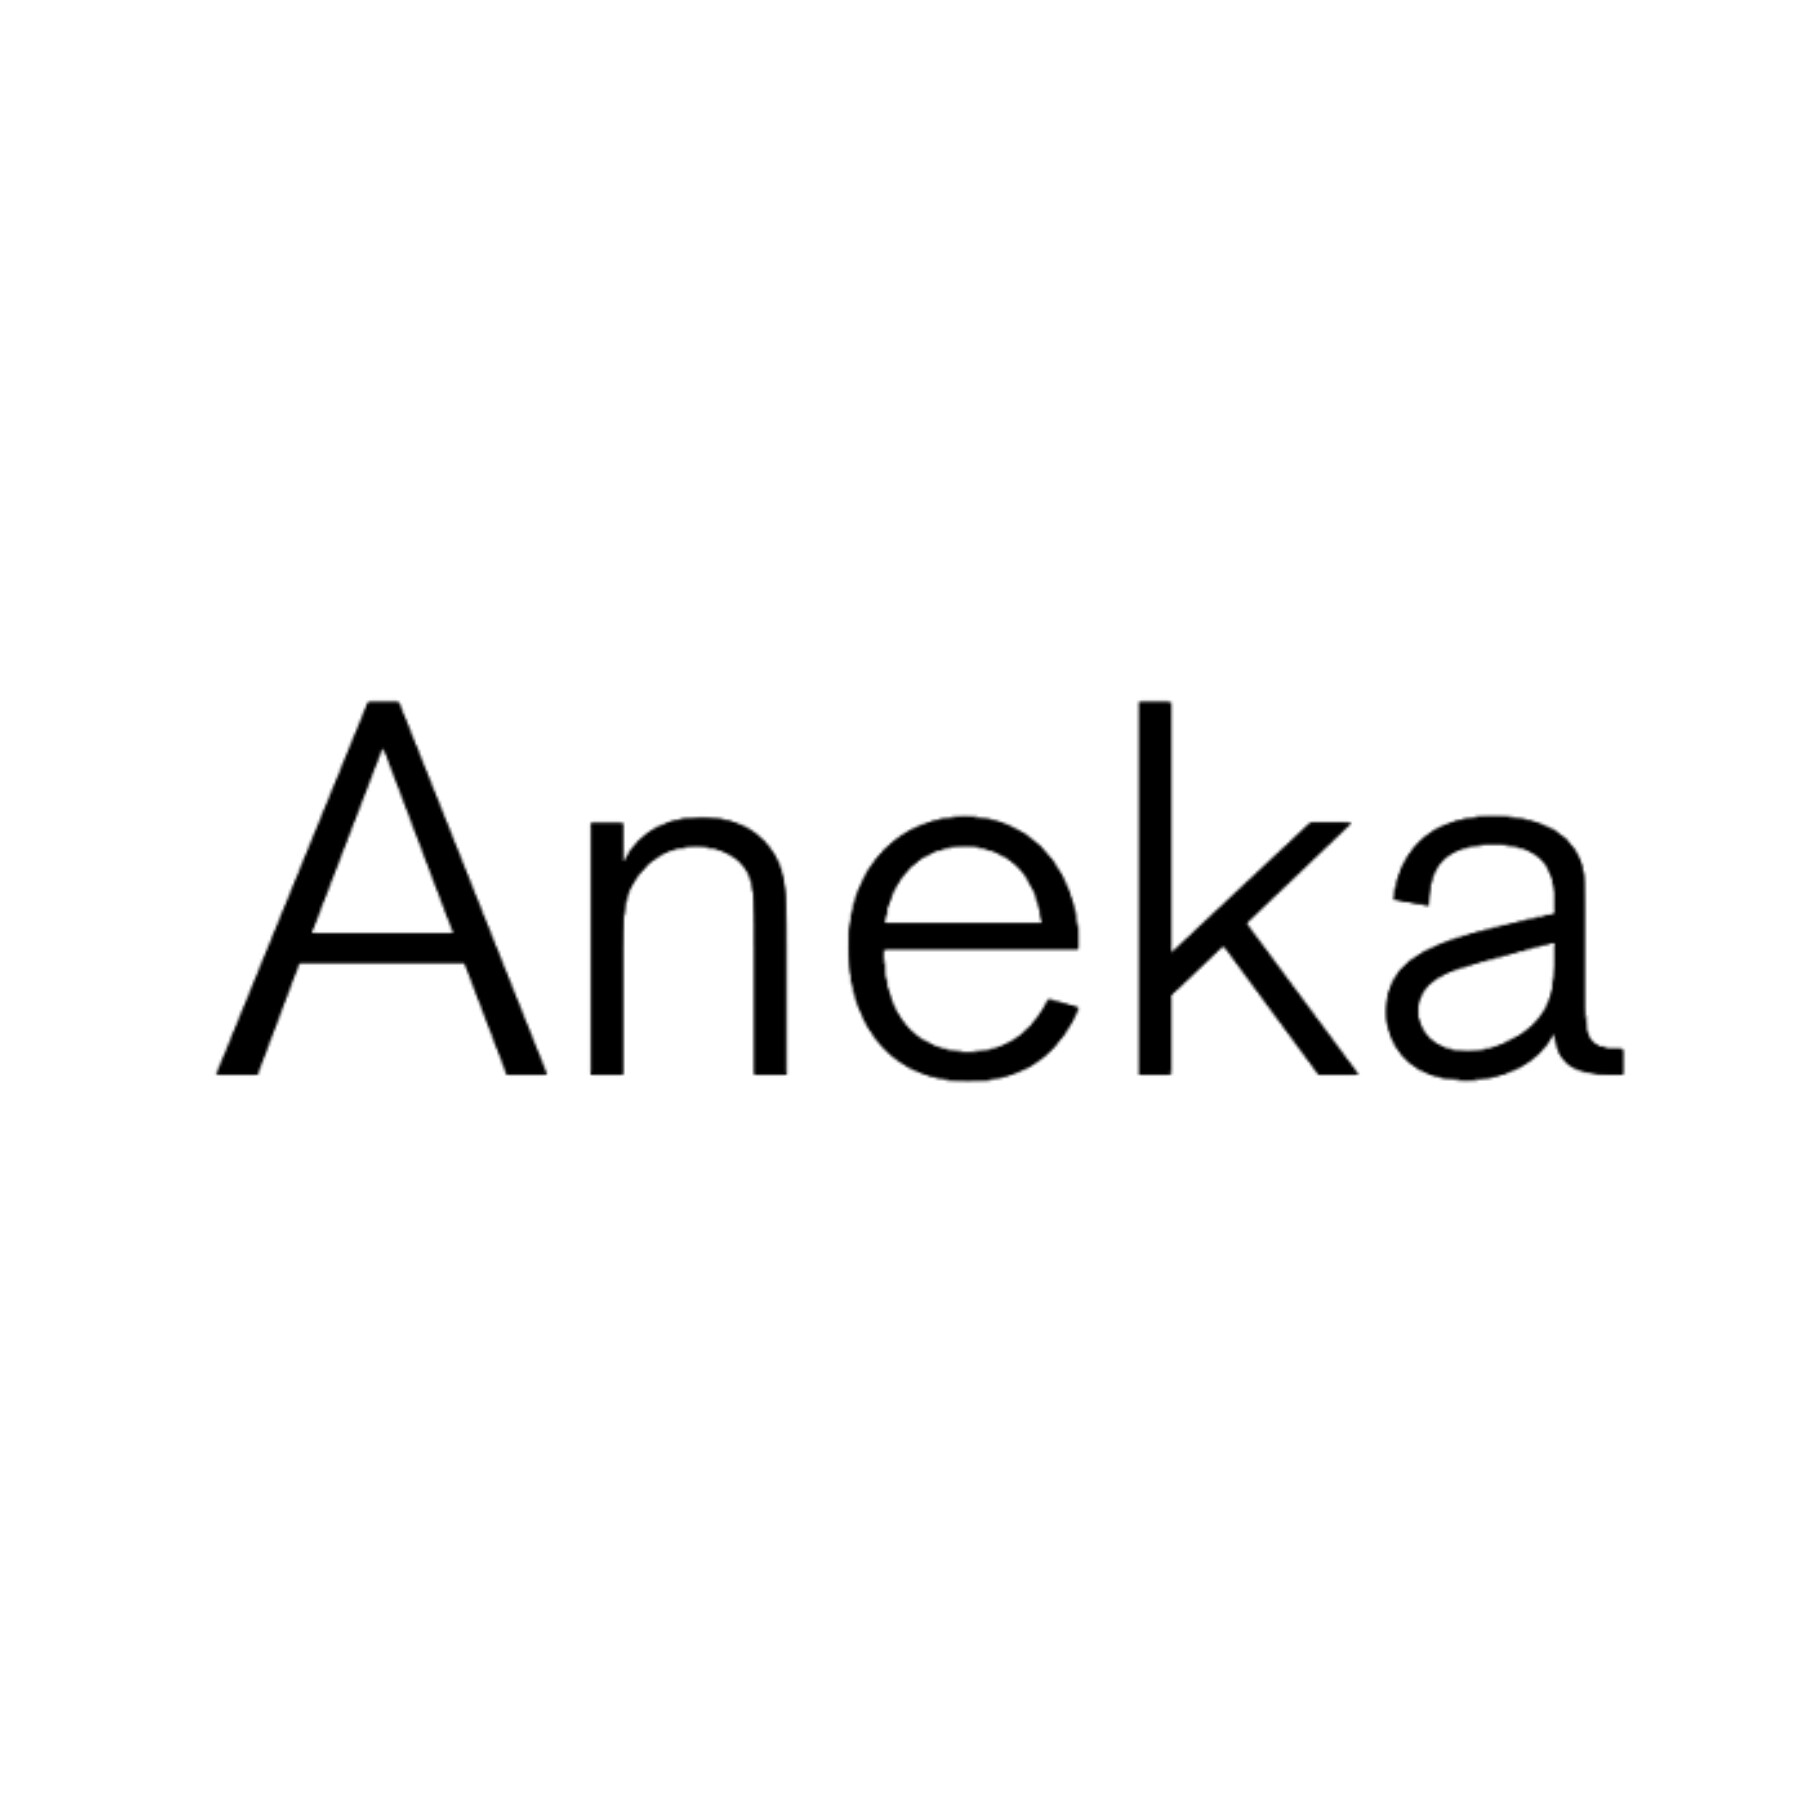 Aneka